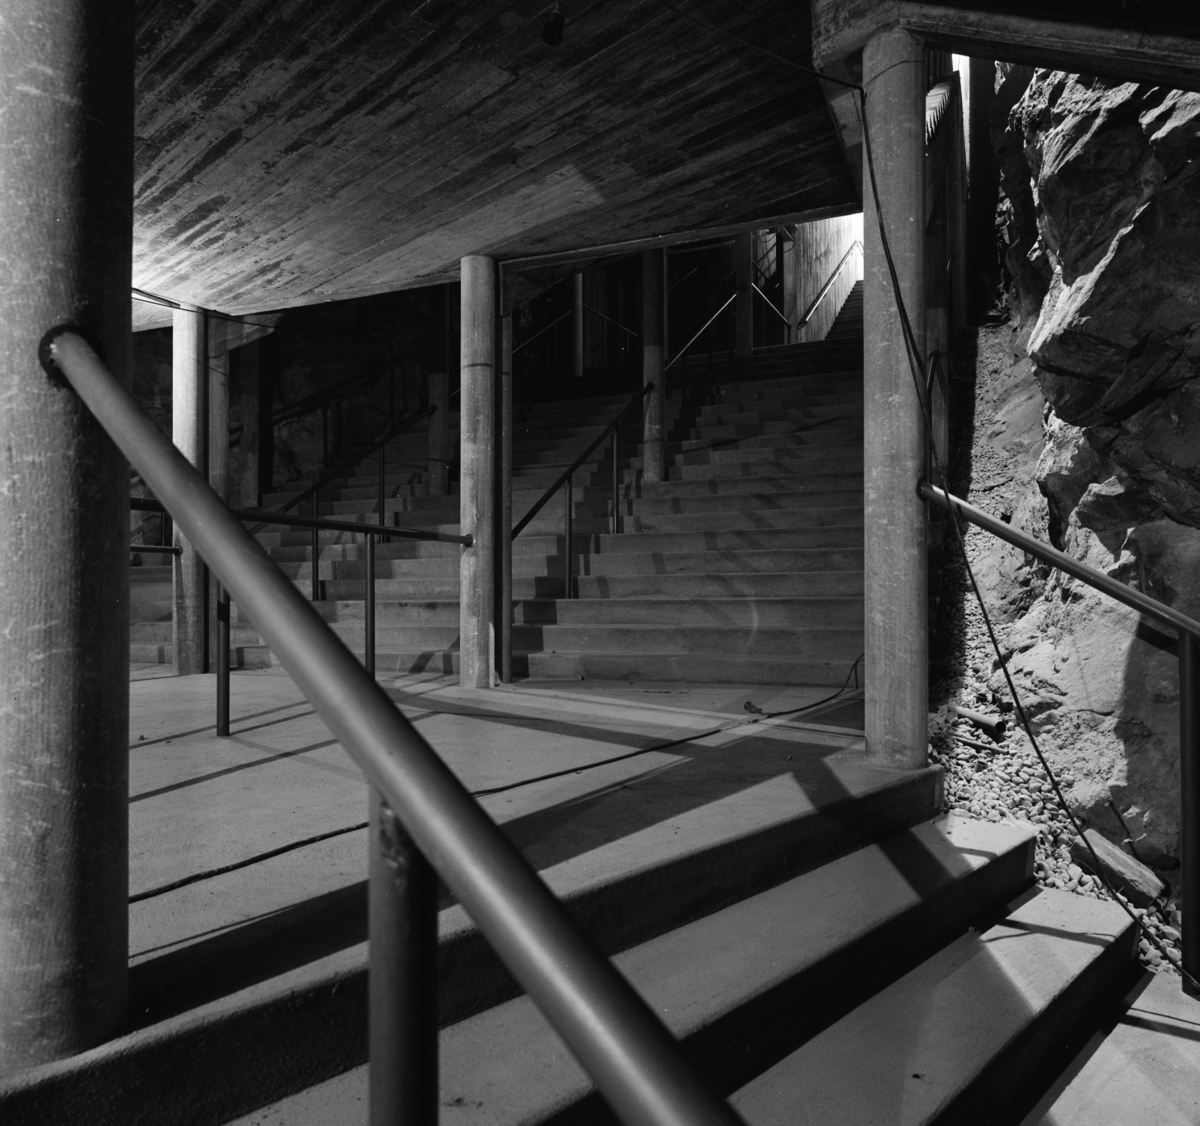 Katarinagaraget
Interiör, trappa intill bergvägg